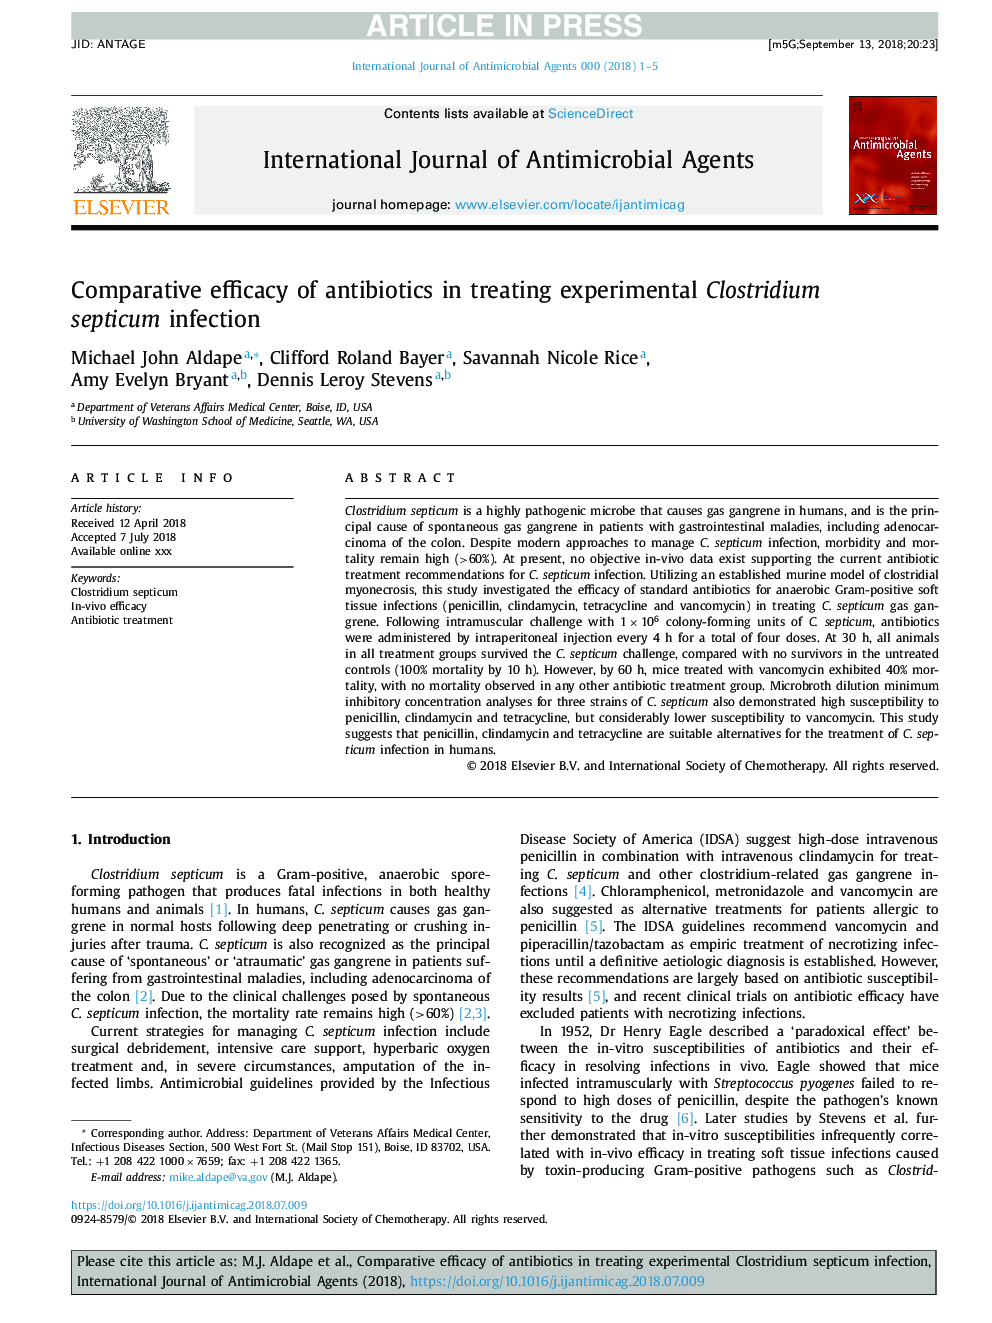 Comparative efficacy of antibiotics in treating experimental Clostridium septicum infection